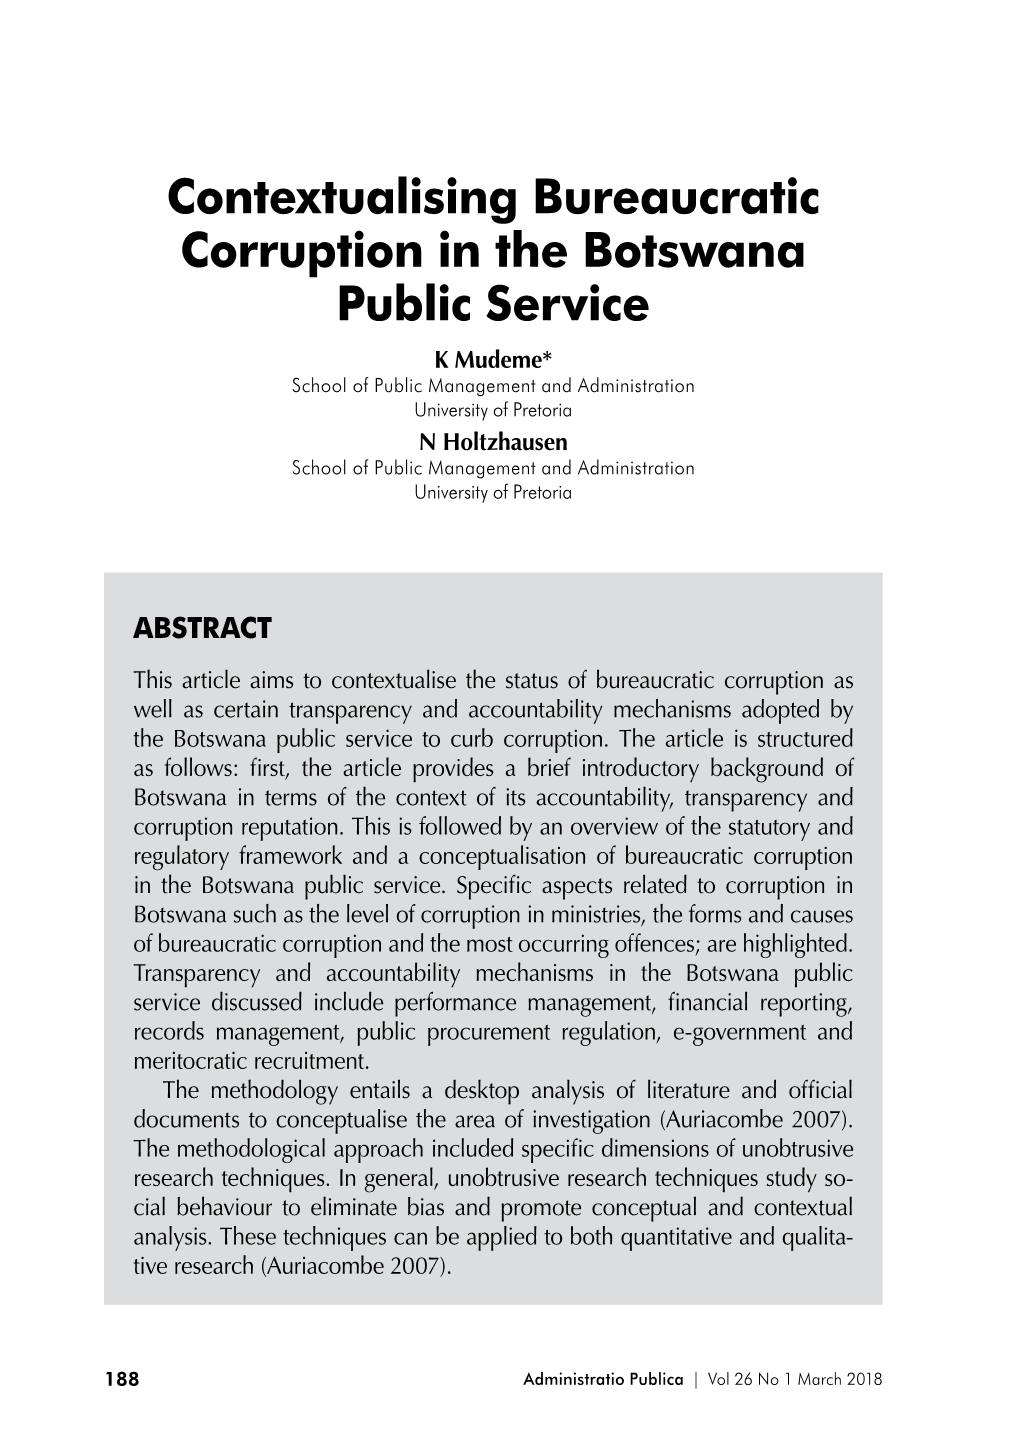 Contextualising Bureaucratic Corruption in the Botswana Public